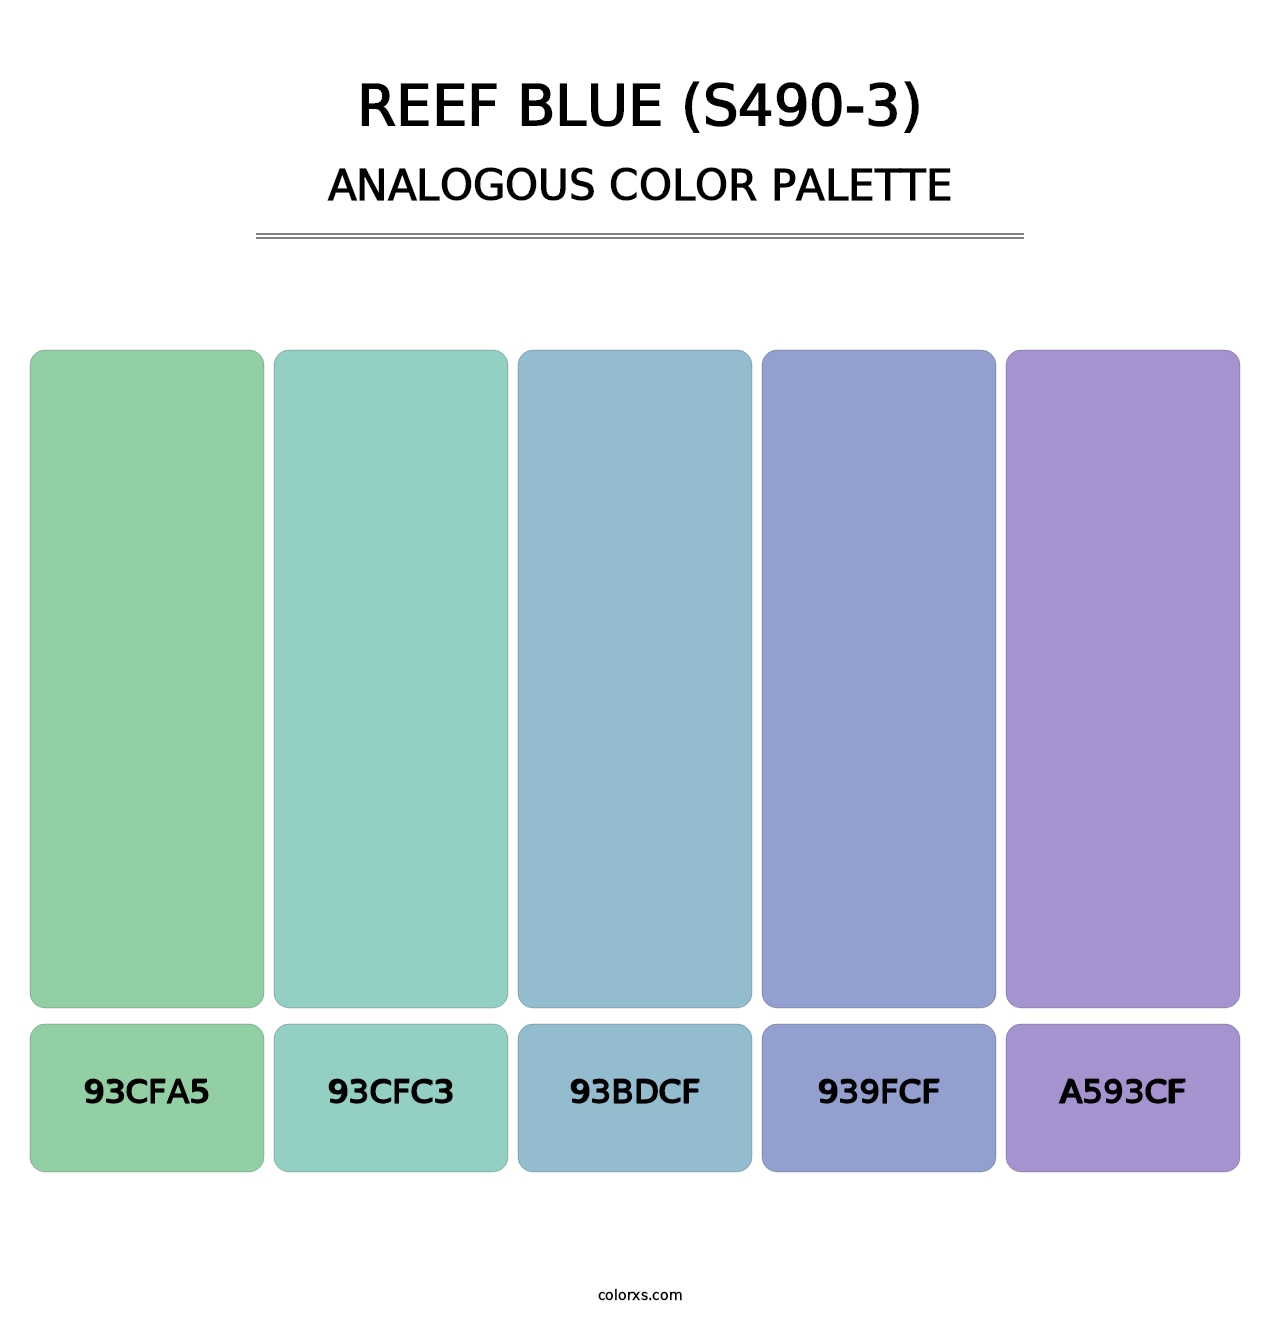 Reef Blue (S490-3) - Analogous Color Palette